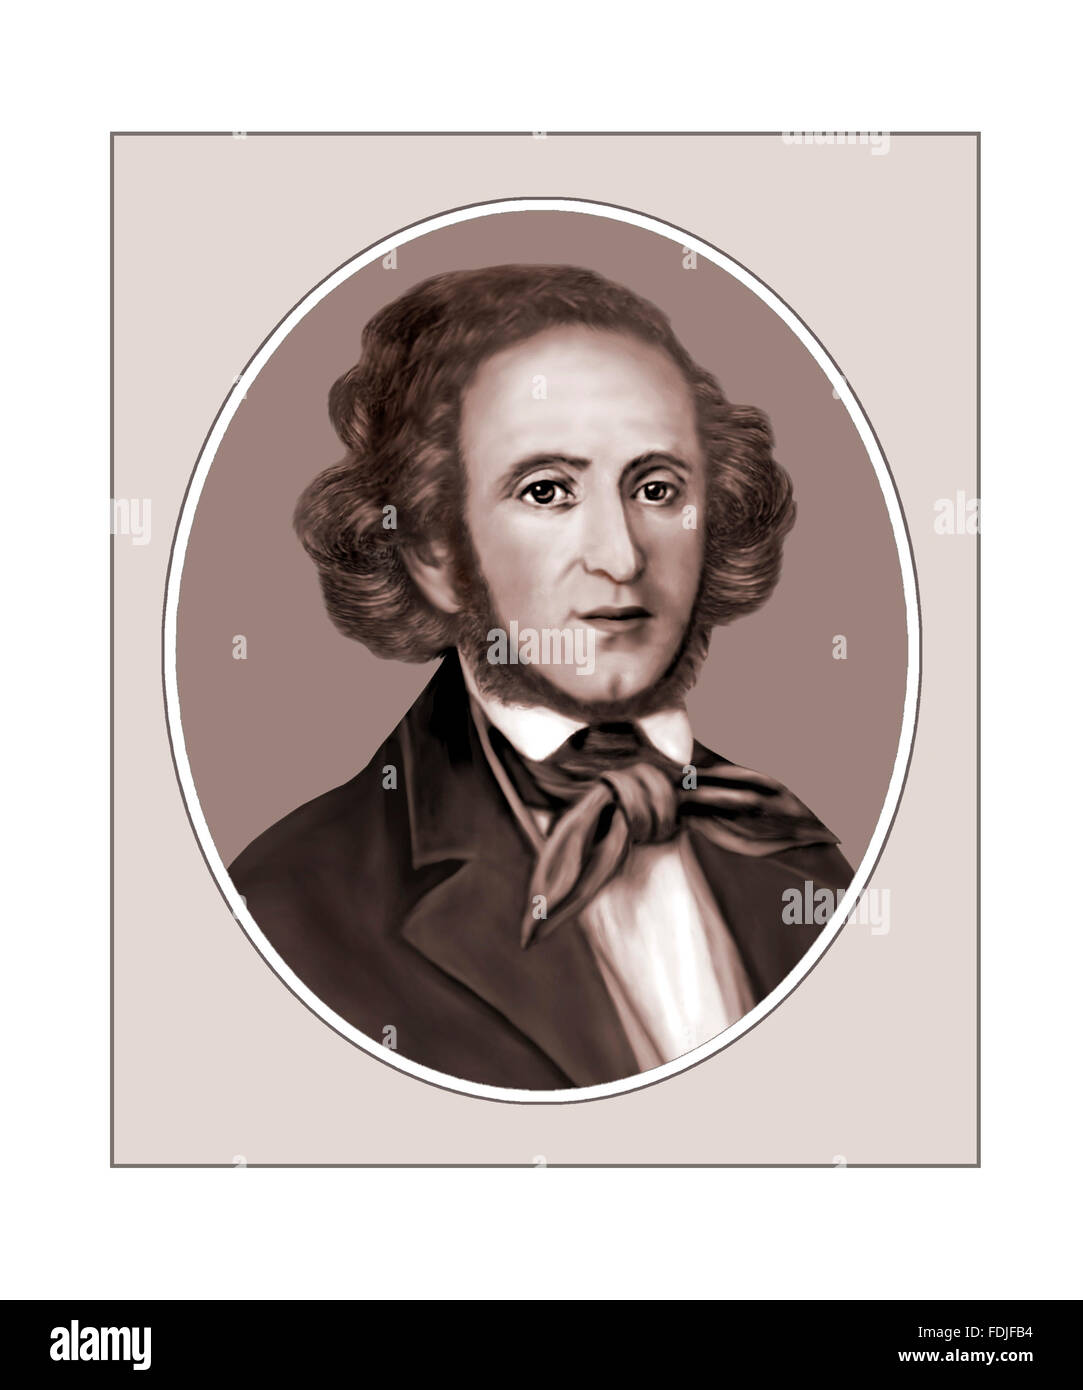 Felix Mendelssohn Bartholdy, Composer, Portrait Stock Photo